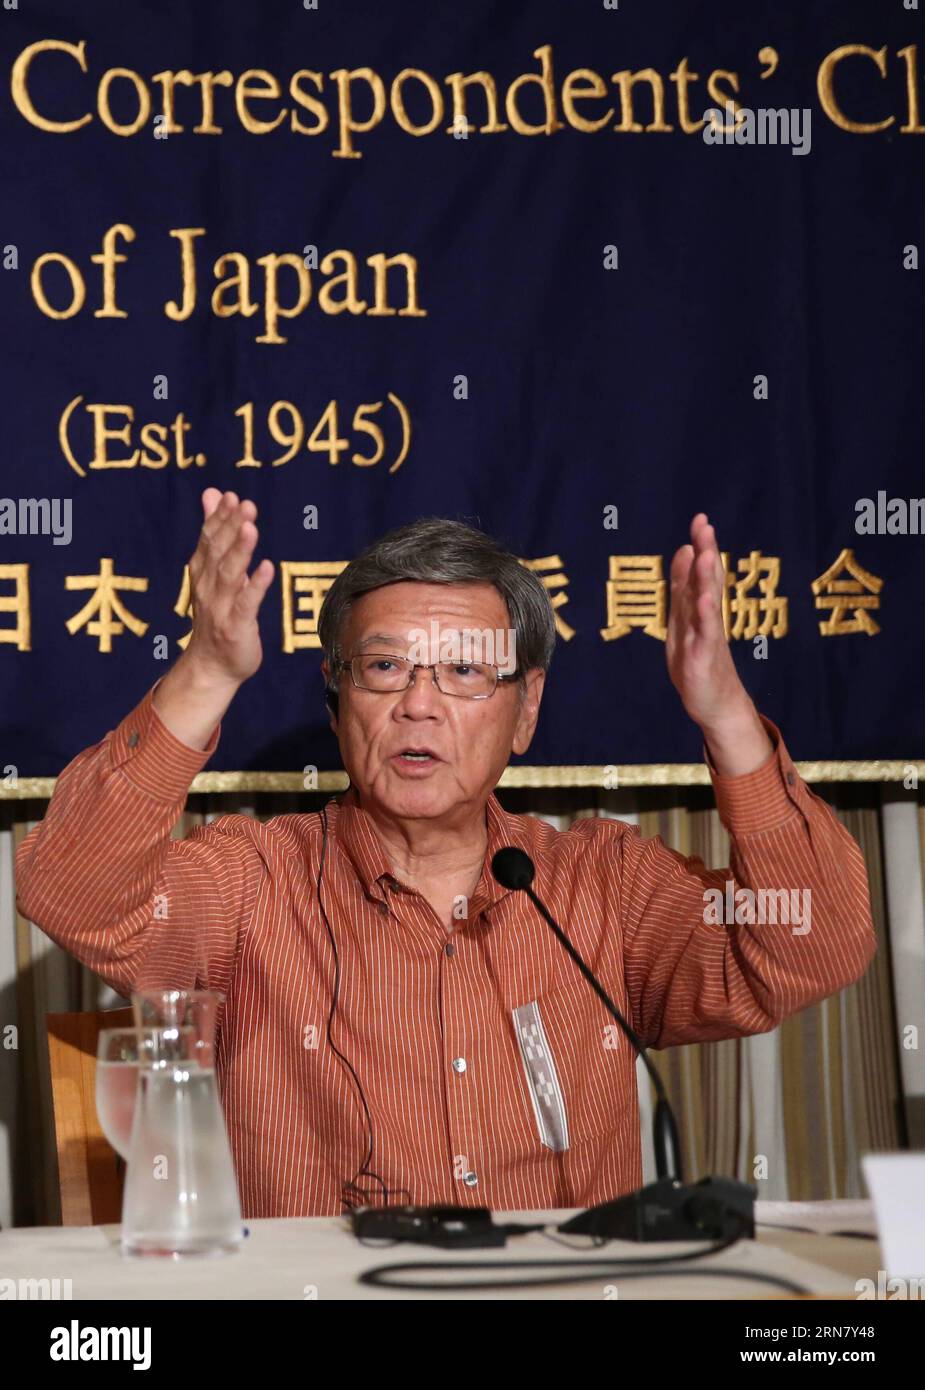 Takeshi Onaga, Gouverneur der südlichsten Präfektur Okinawa Japans, spricht auf einer Pressekonferenz in Tokio, Japan, am 24. September 2015. Takeshi Onaga, der Gouverneur der südlichsten Präfektur Japans, überfiel die japanische Regierung am Donnerstag über das umstrittene Problem der Verlegung der US-Basis und kritisierte, dass Okinawans Demokratie und Menschenrechte von der Zentralregierung nicht garantiert werden. ) (Zhf) JAPAN-TOKIO-OKINAWA GOUVERNEURSKONFERENZ LiuxTian PUBLICATIONxNOTxINxCHN Takeshi Onaga Gouverneur von Japan S Most Southern Iceland Präfektur Okinawa spricht AUF einer Press Co Stockfoto